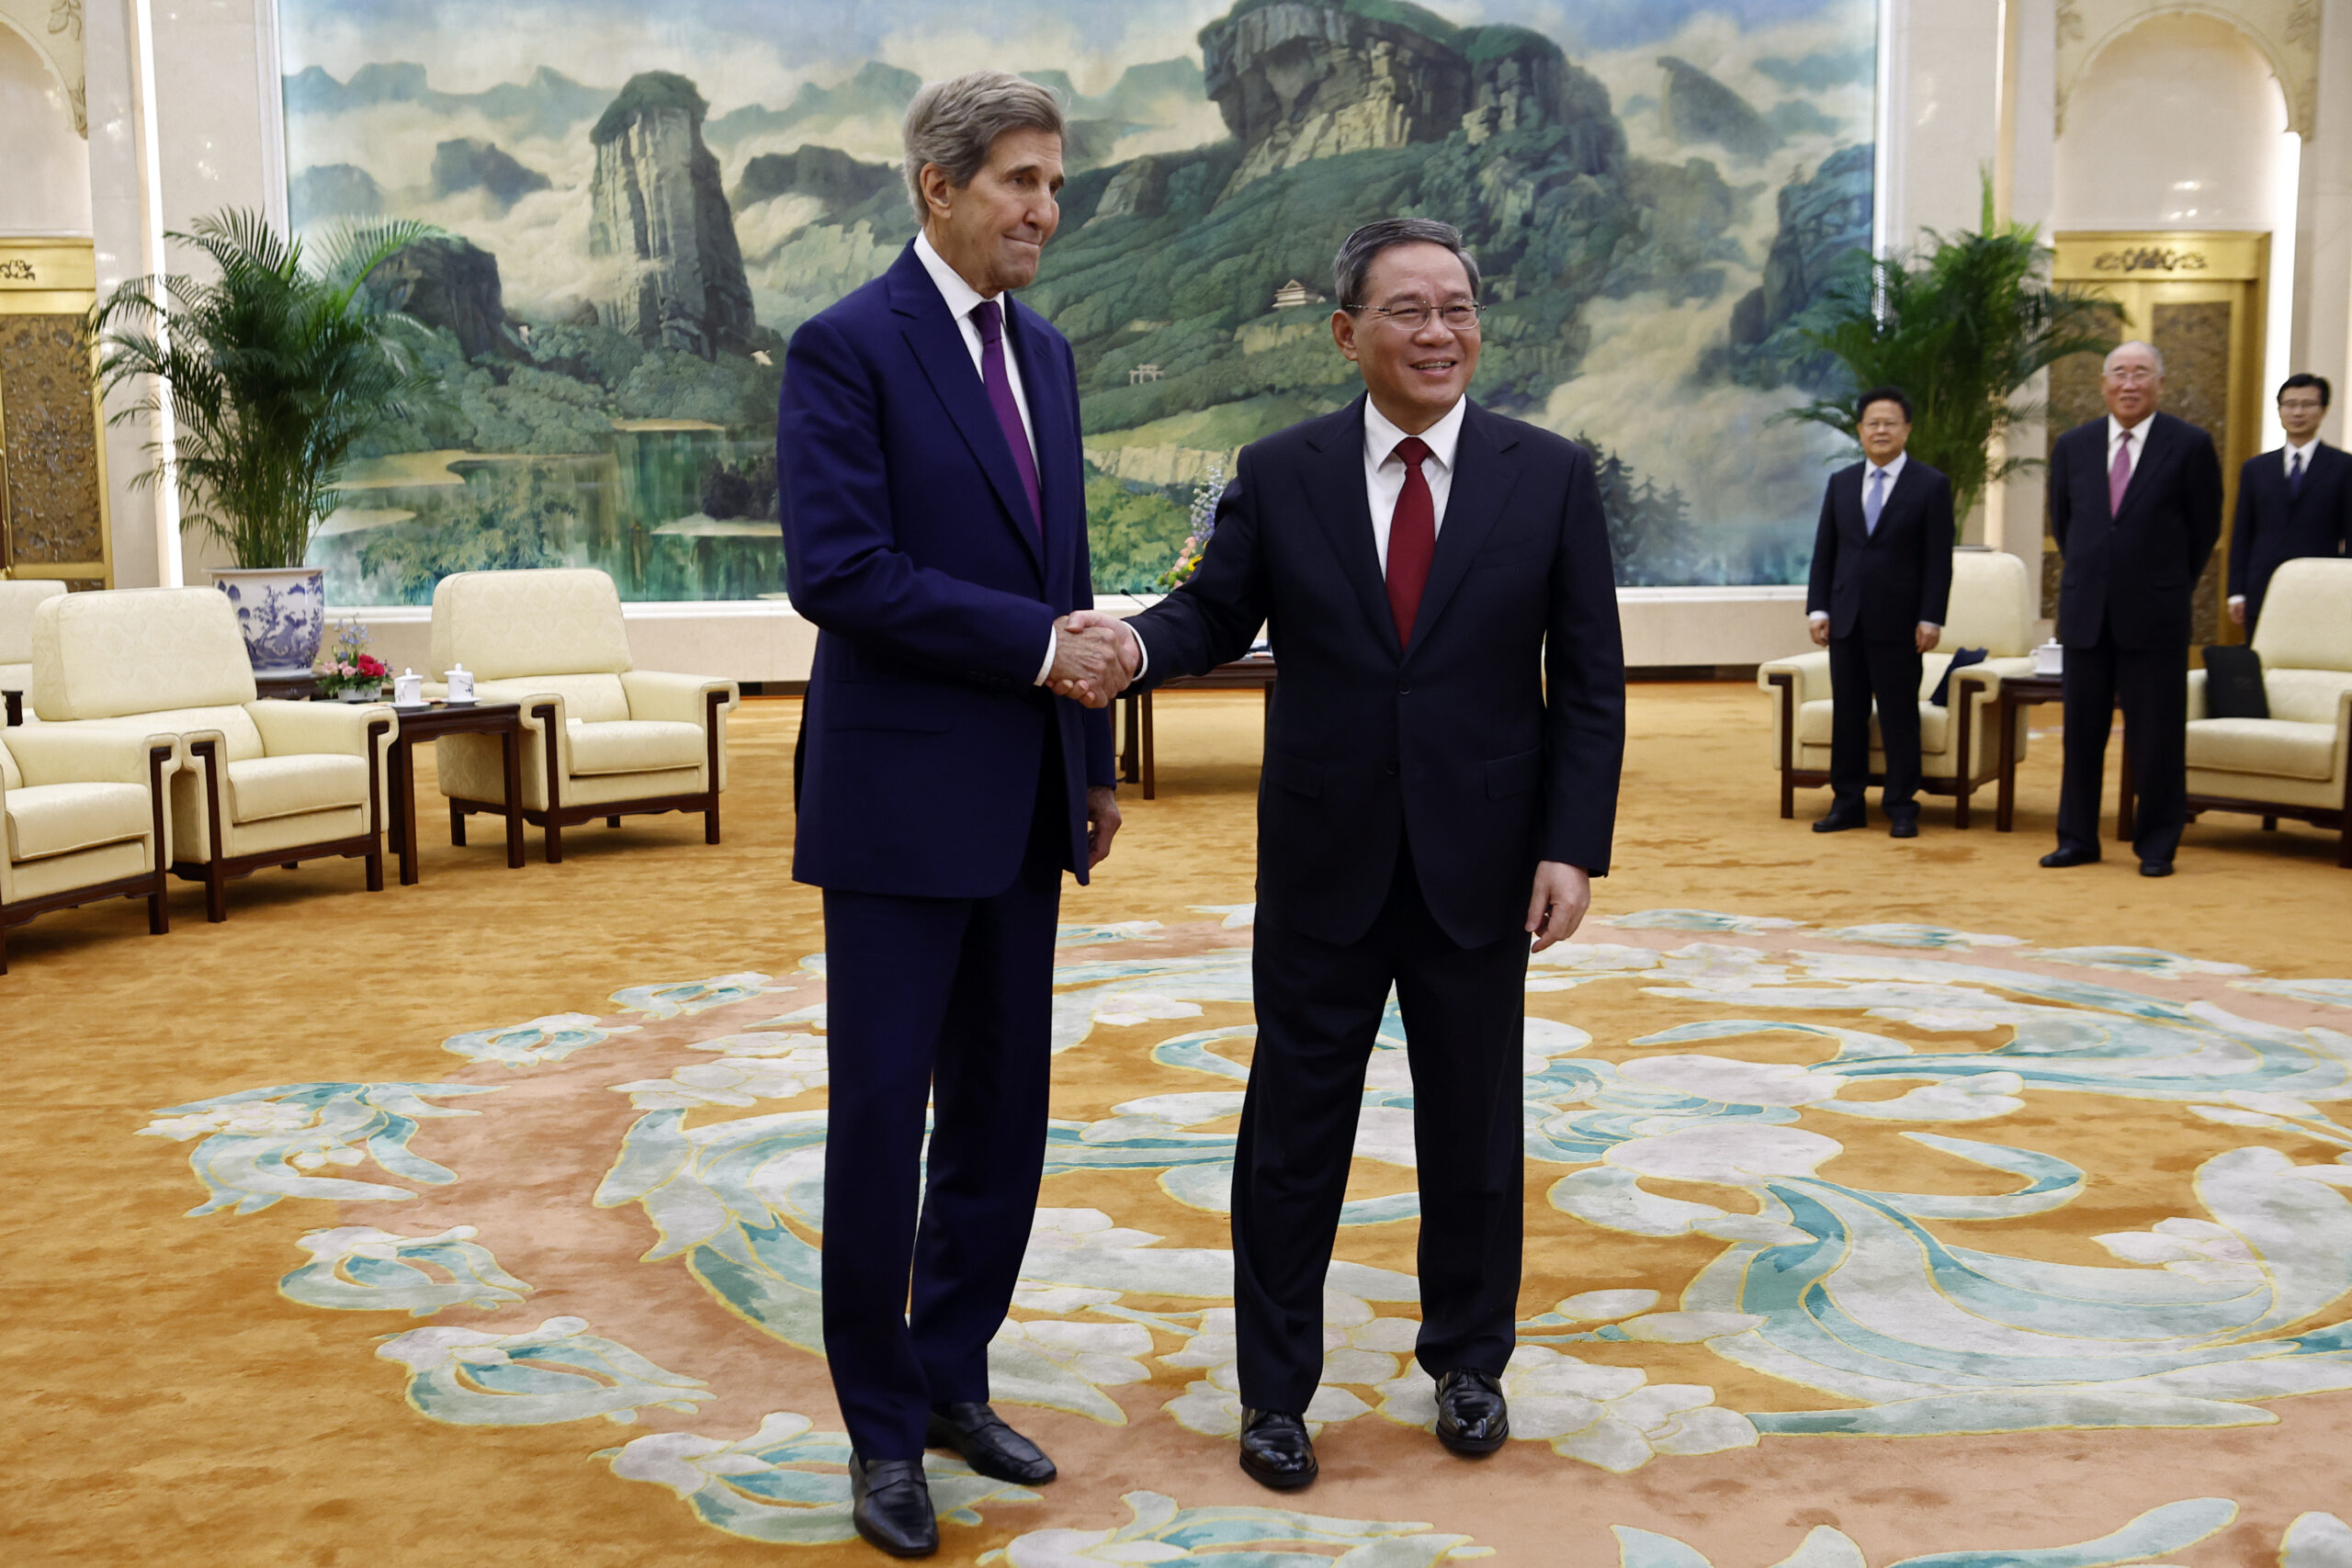 Λι Τσιανγκ: Συνεργασία ΗΠΑ-Κίνας για την αποτροπή της κλιματικής αλλαγής